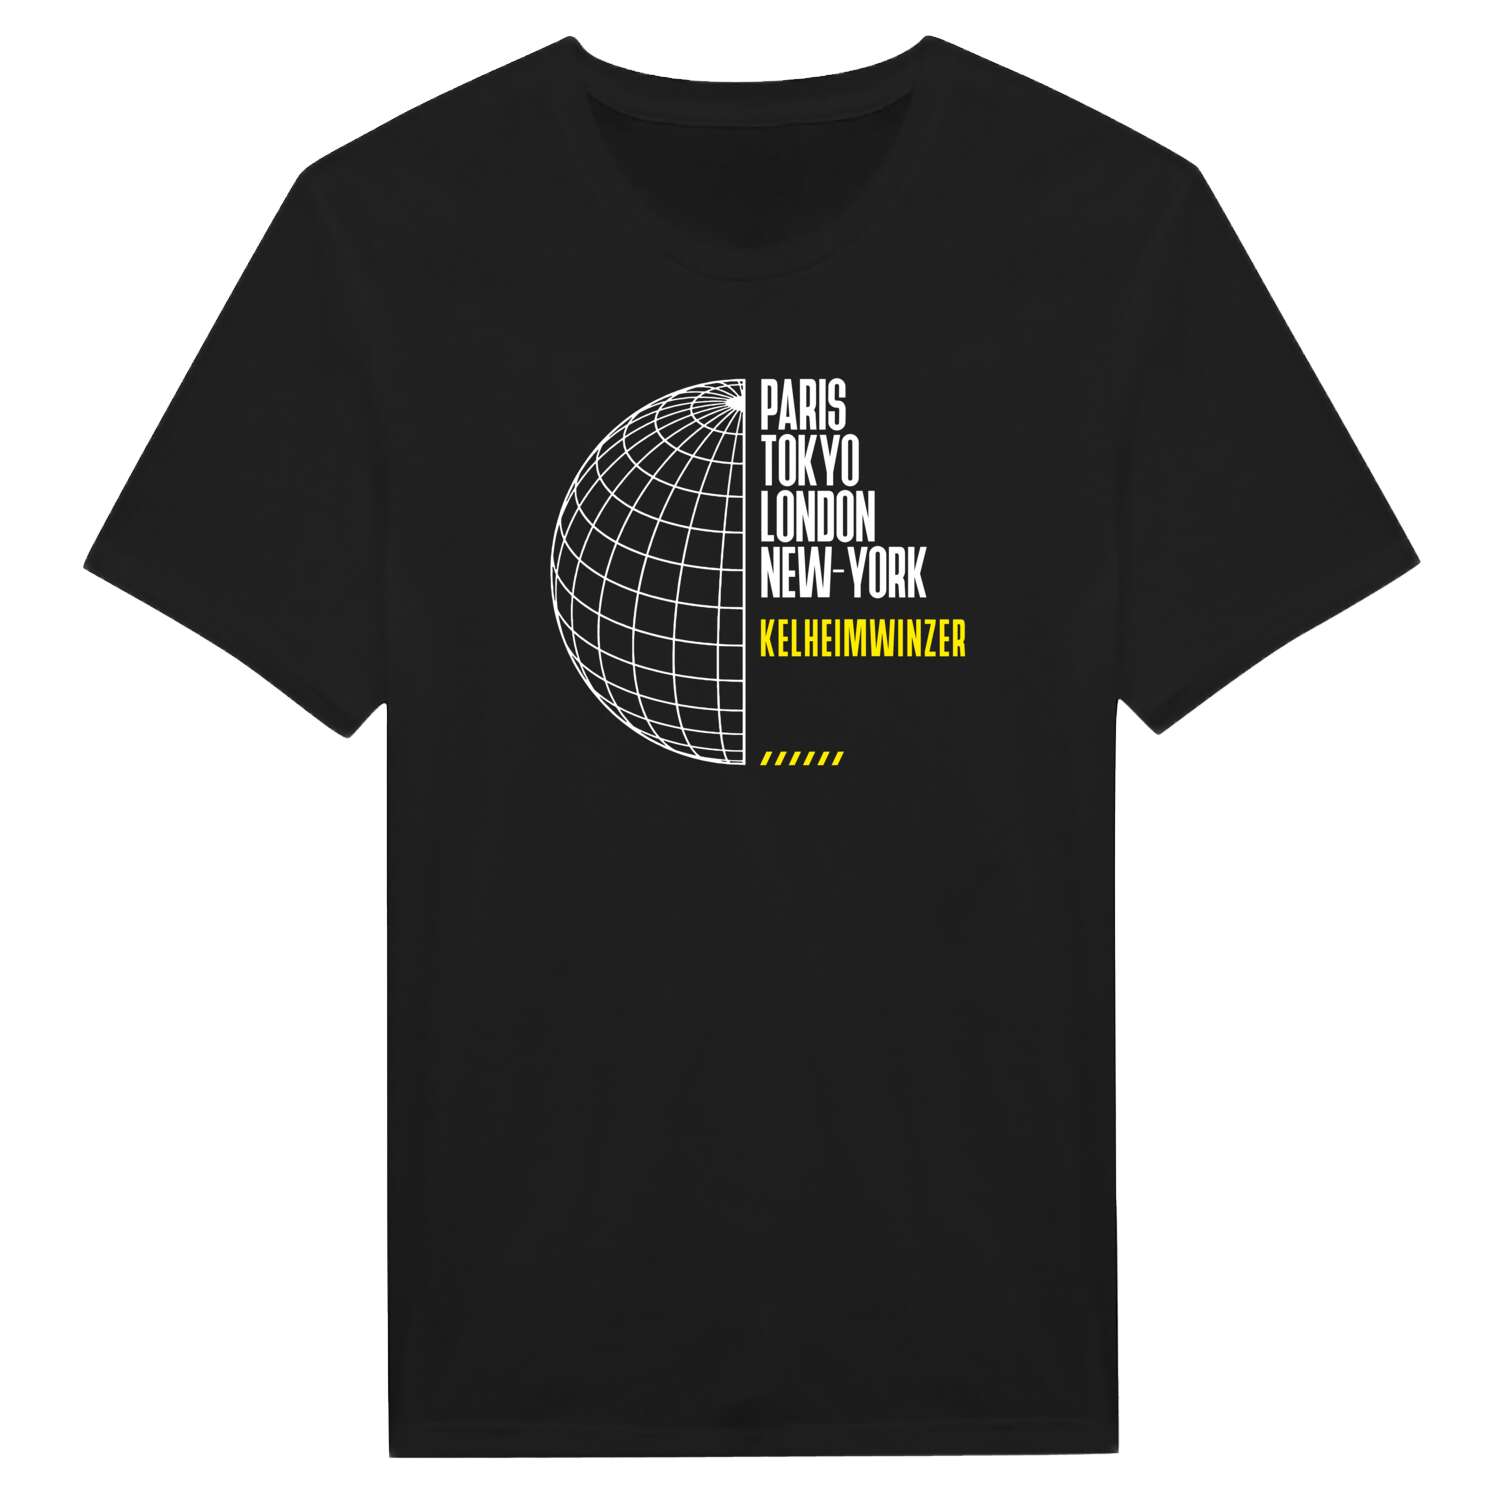 Kelheimwinzer T-Shirt »Paris Tokyo London«